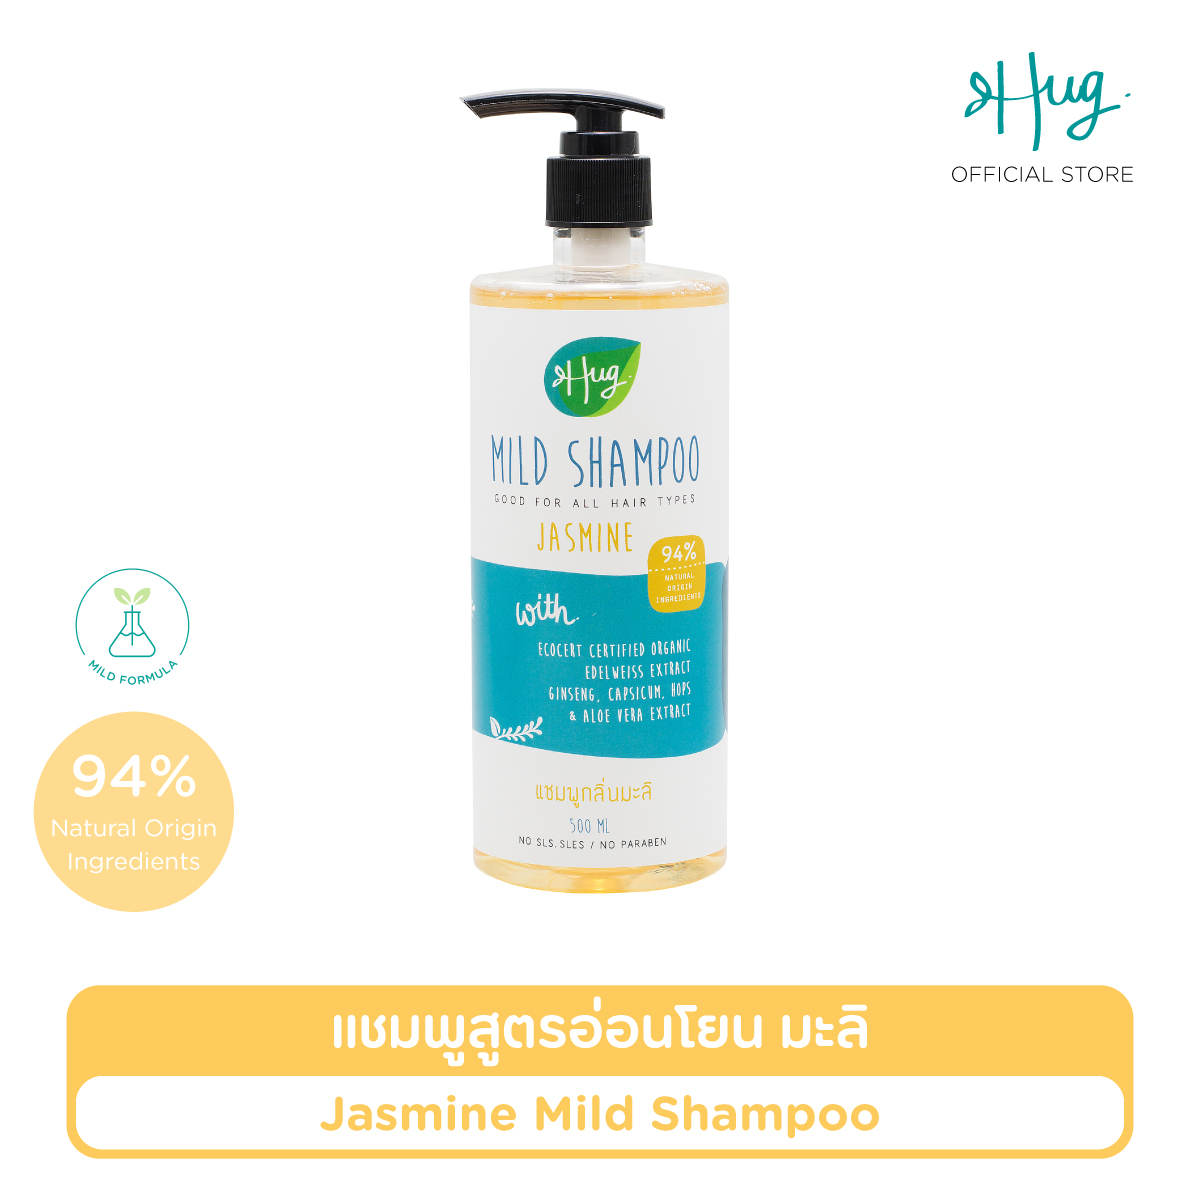 ราคา Hug : Mild Shampoo Jasmine with 94% Natural Ingredients — ฮัก แชมพูกลิ่นมะลิ สูตรอ่อนโยน ส่วนผสมจากธรรมชาติ 94% พร้อมสารสกัดออร์แกนิค